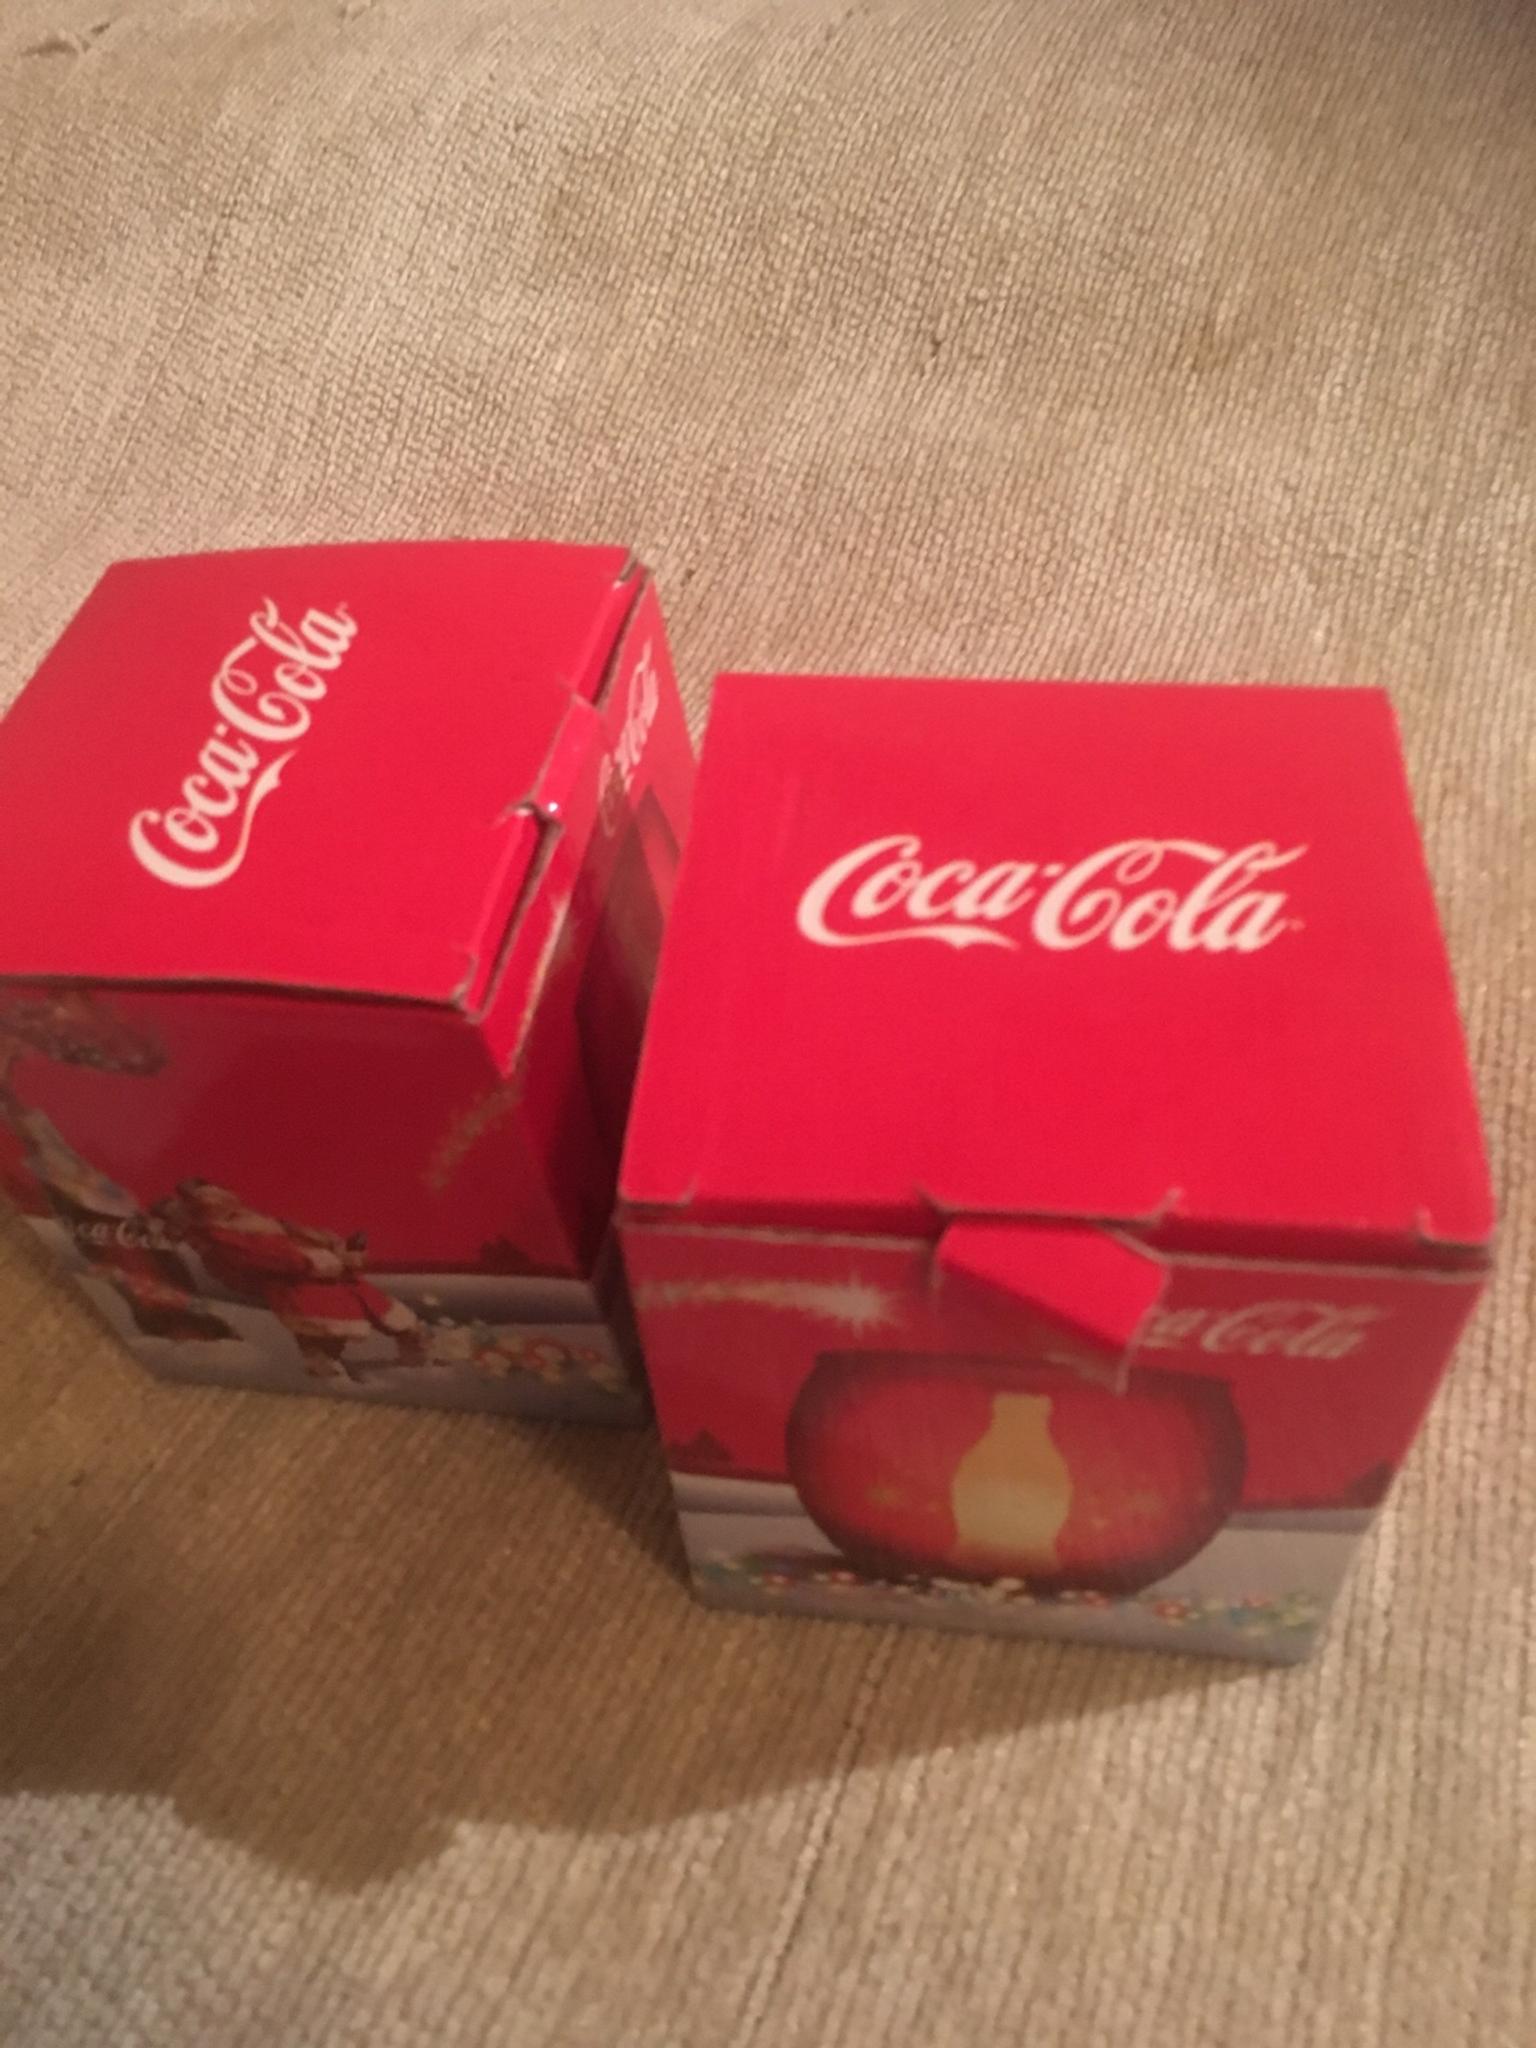 Babbo Natale English.Coca Cola Coppia Candele Natale Babbo Natale In 20136 Milano For 10 00 For Sale Shpock